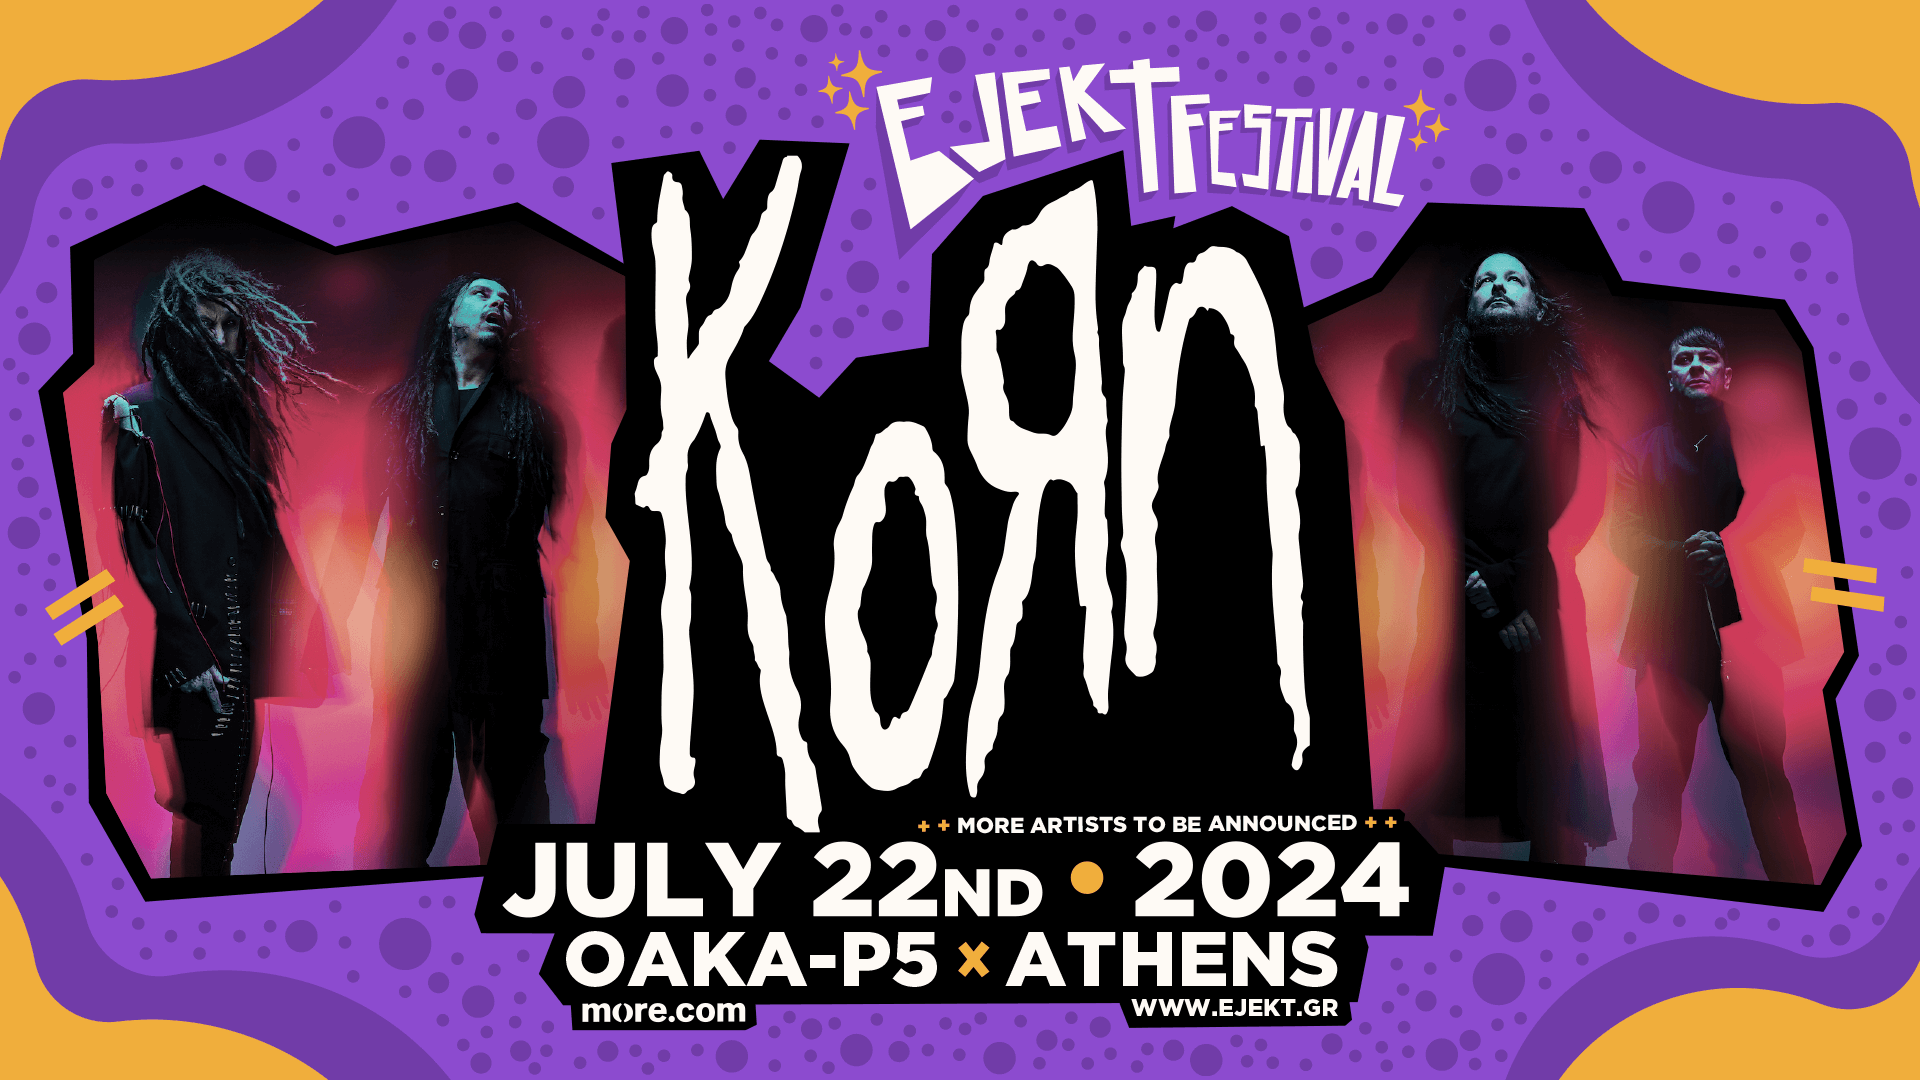 Οι Korn είναι οι headliners του EJEKT Festival 2024! – EJEKT Festival